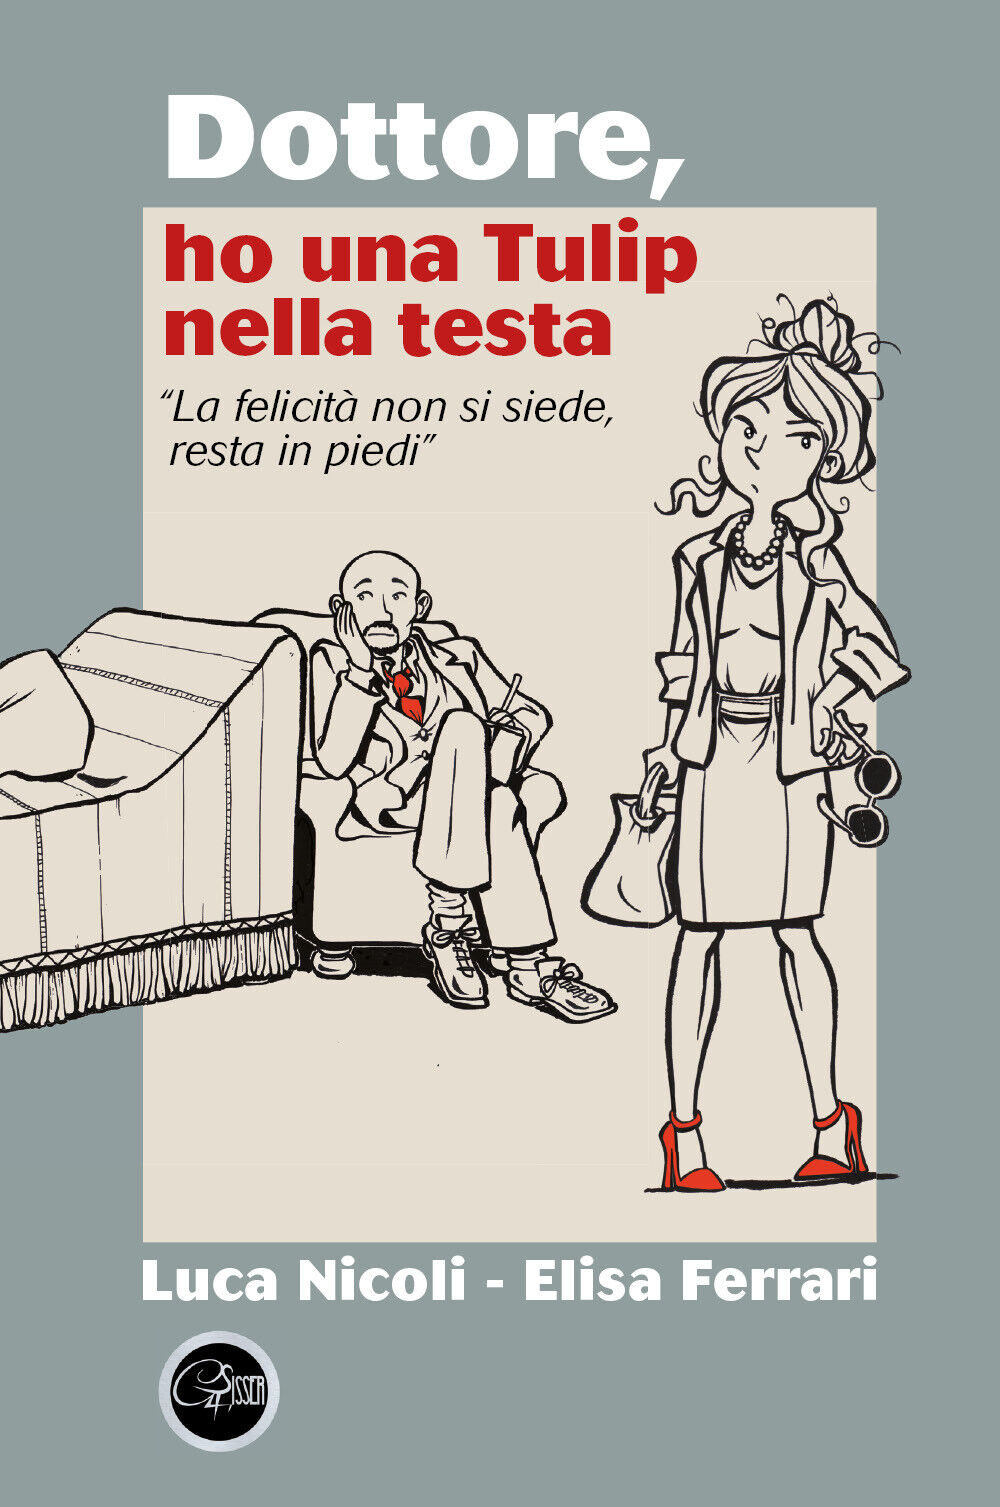 Dottore ho una Tulip nella testa di Luca Nicoli, Elisa Ferrari,  2022,  Youcanpr